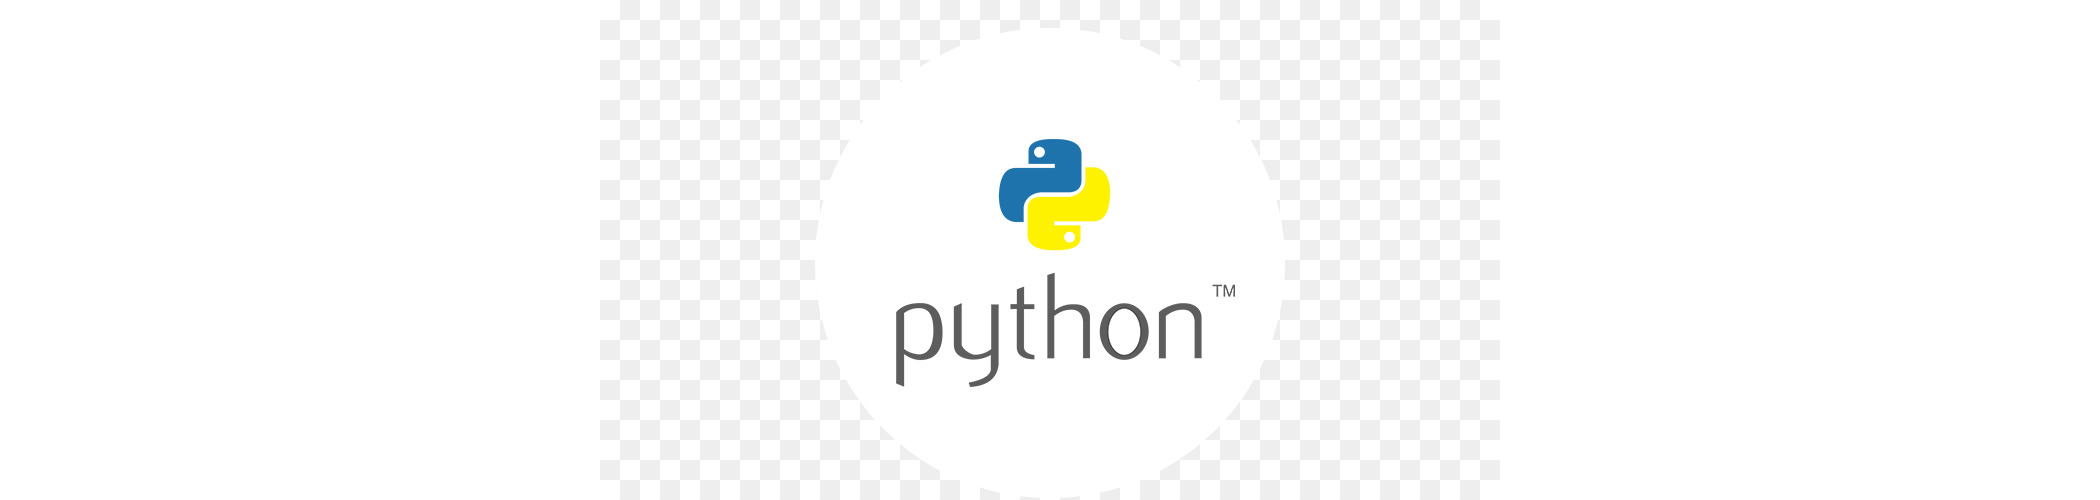 Hostarex blog: Python nədir?